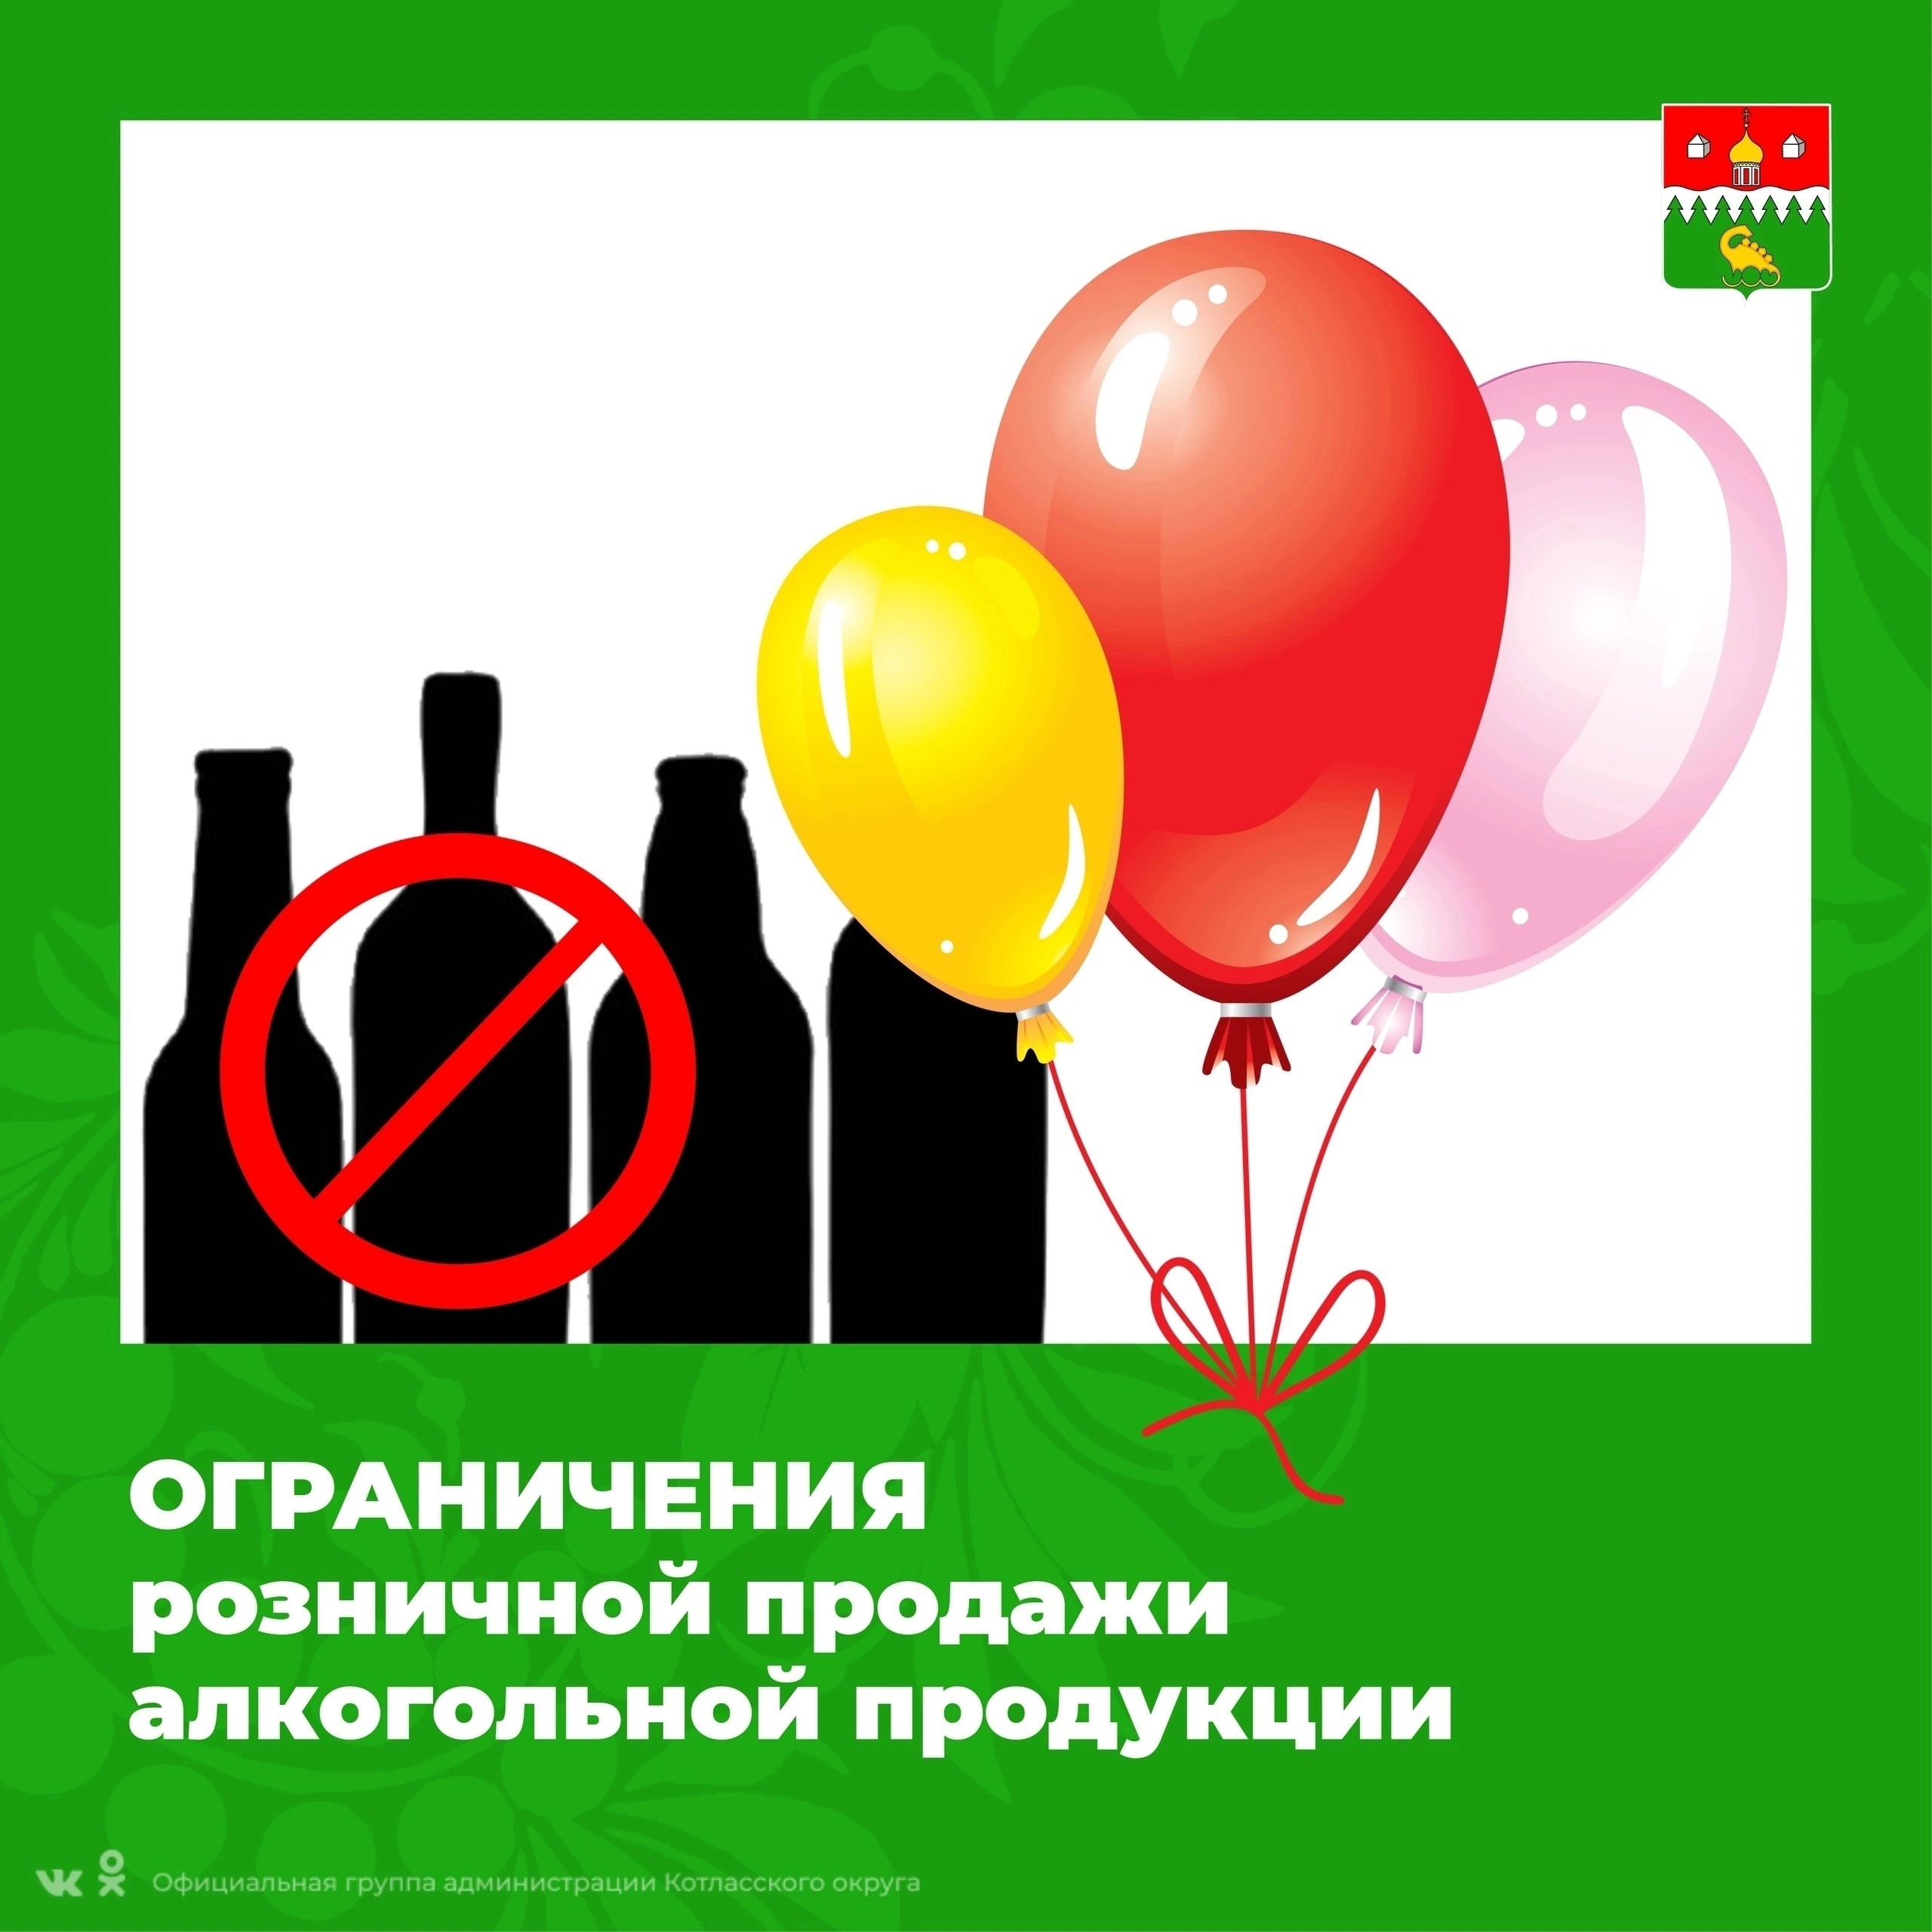 В дни проведения выпускных мероприятий в Котласском муниципальном округе ограничены часы продажи алкогольной продукции.